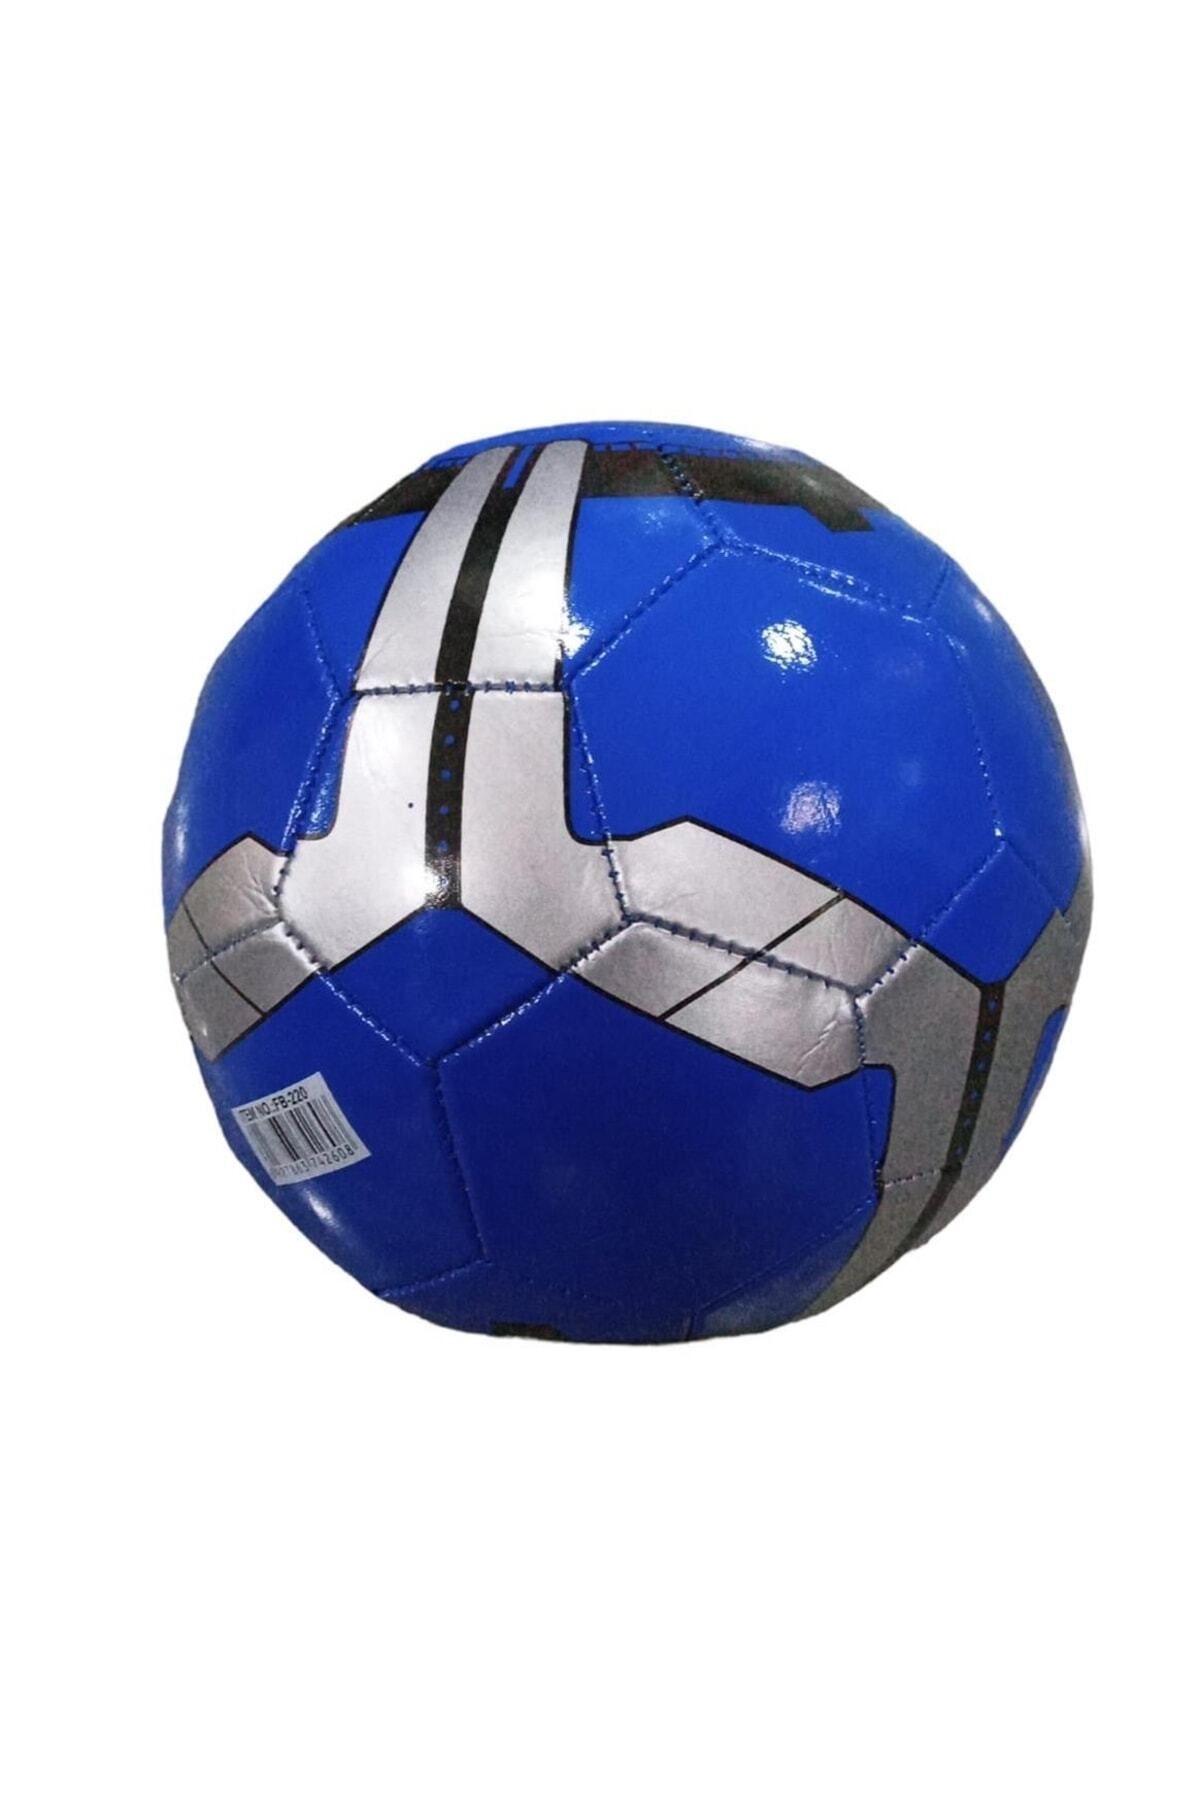 PERİ TOYS Kaliteli Futbol Topu